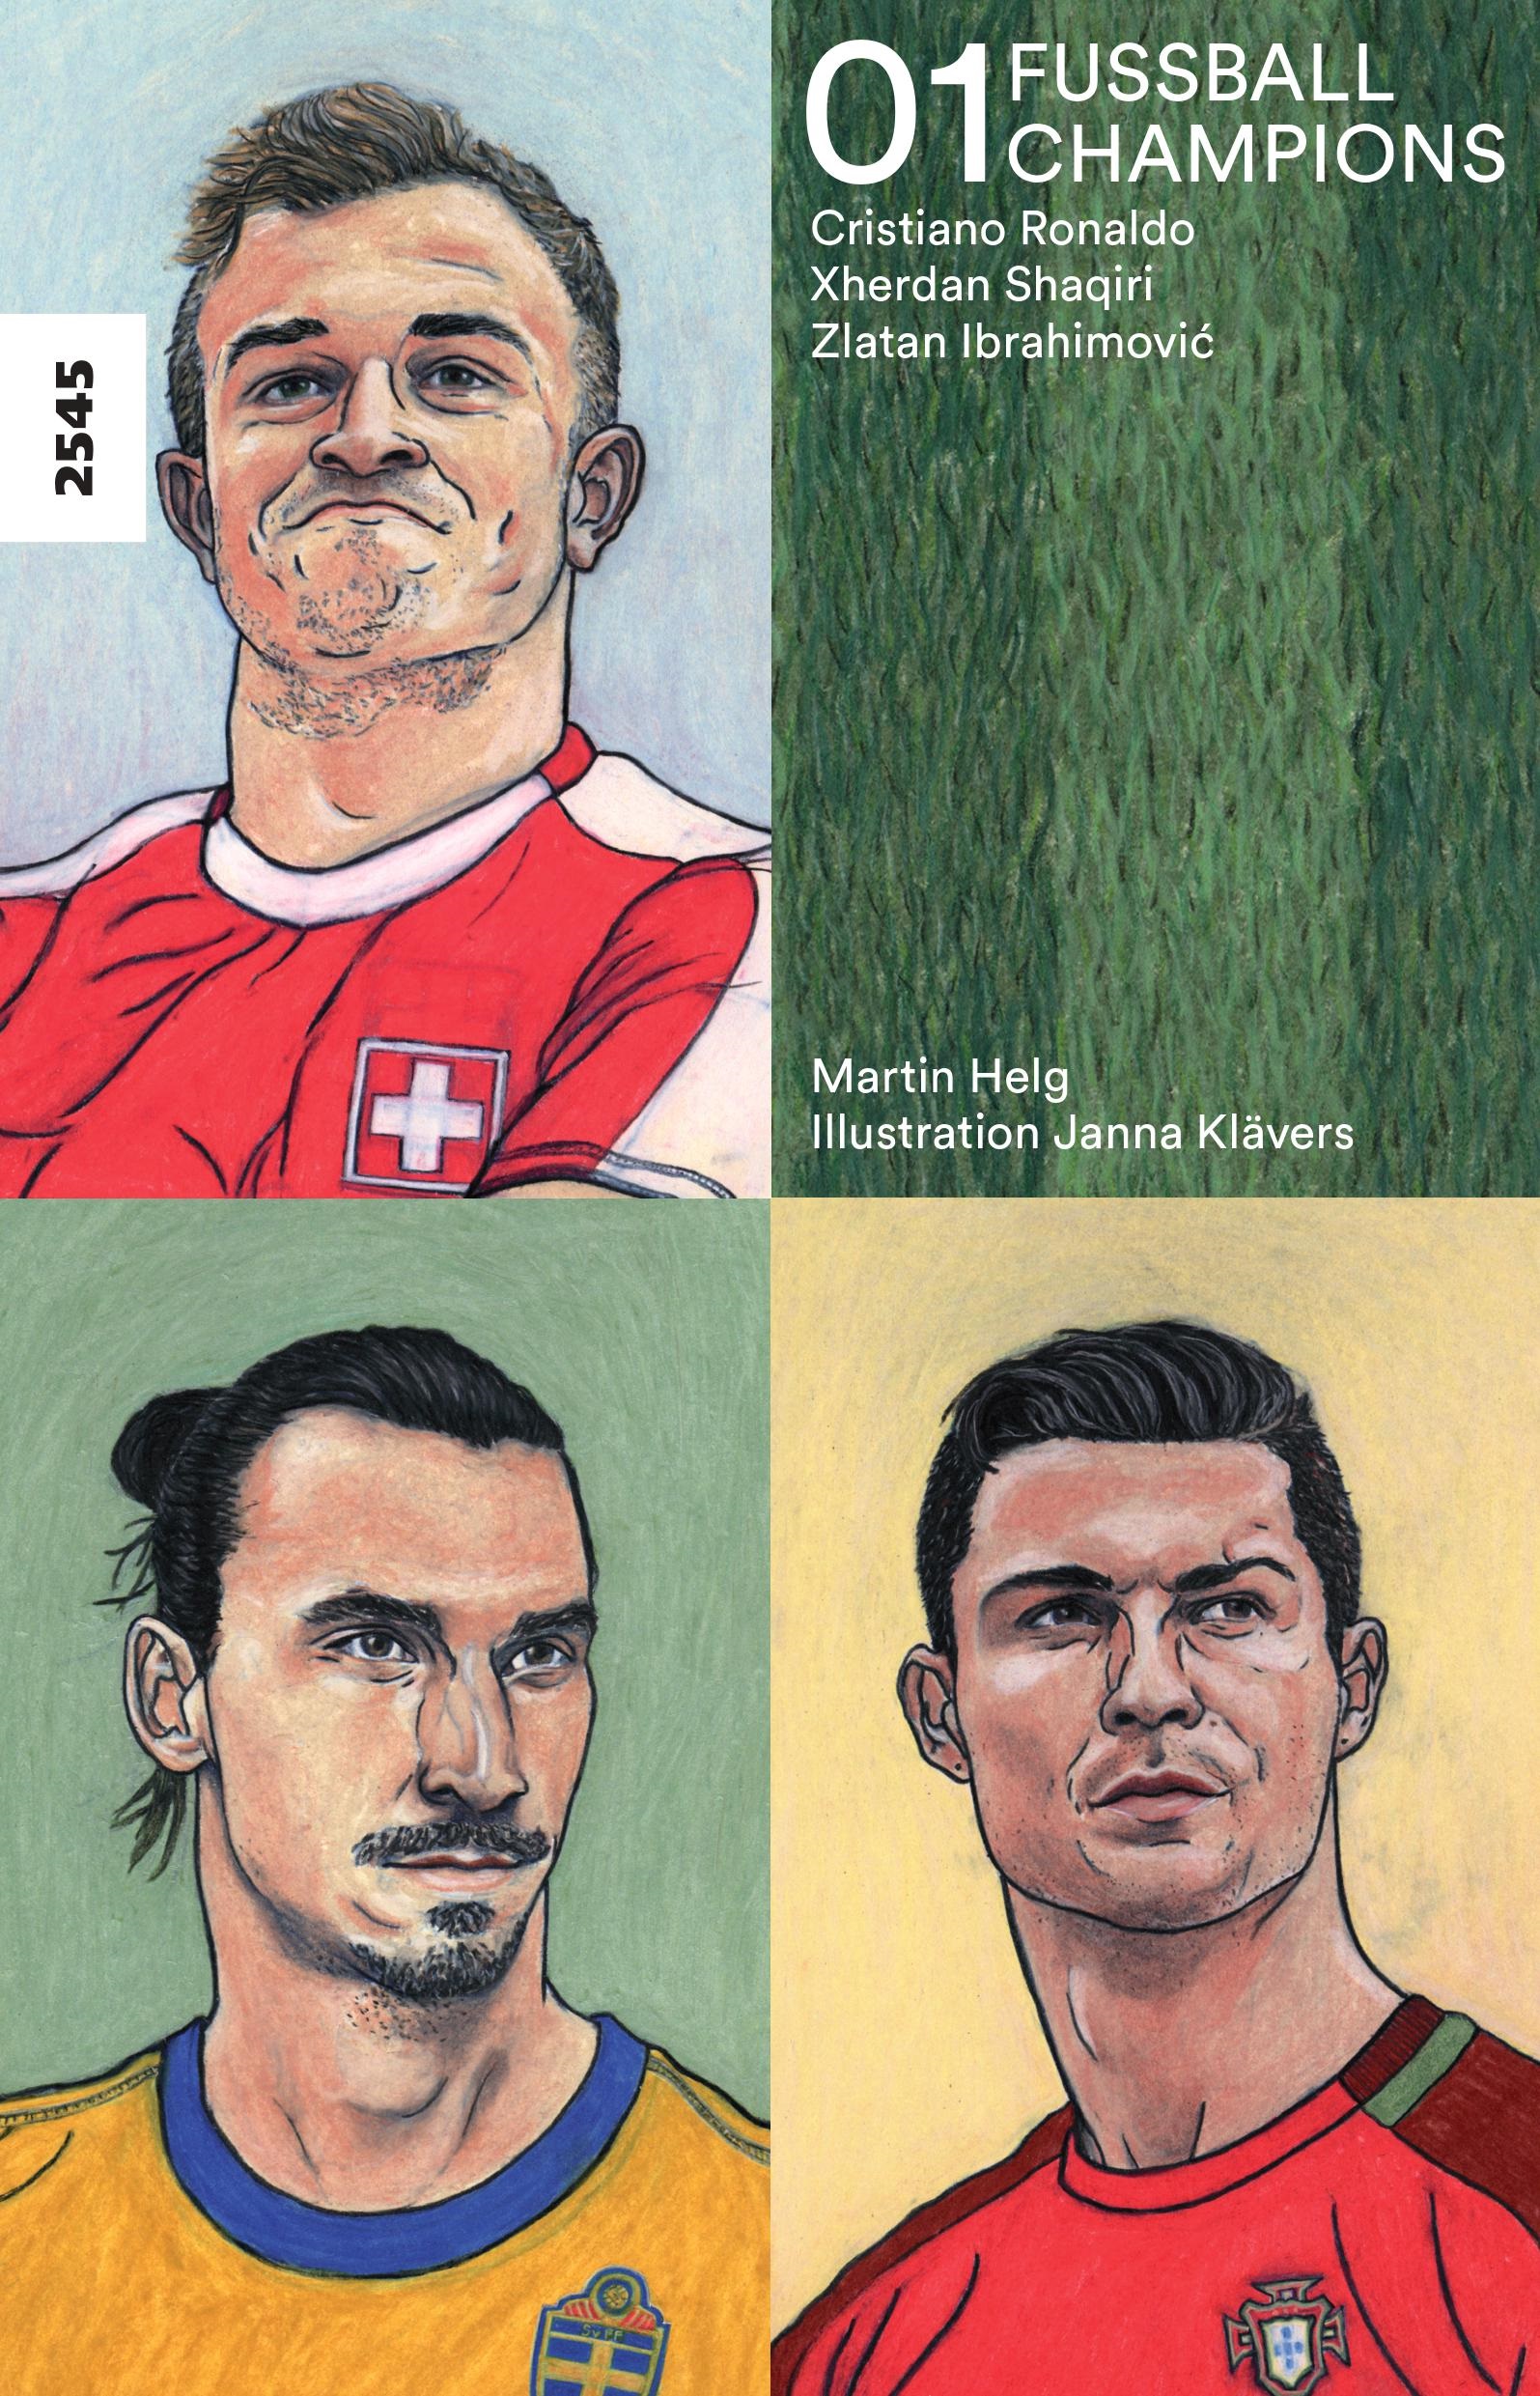 Fussballchampions 01, ein Jugendbuch von Martin Helg, Illustration von Janna Klaevers, SJW Verlag, Biografien